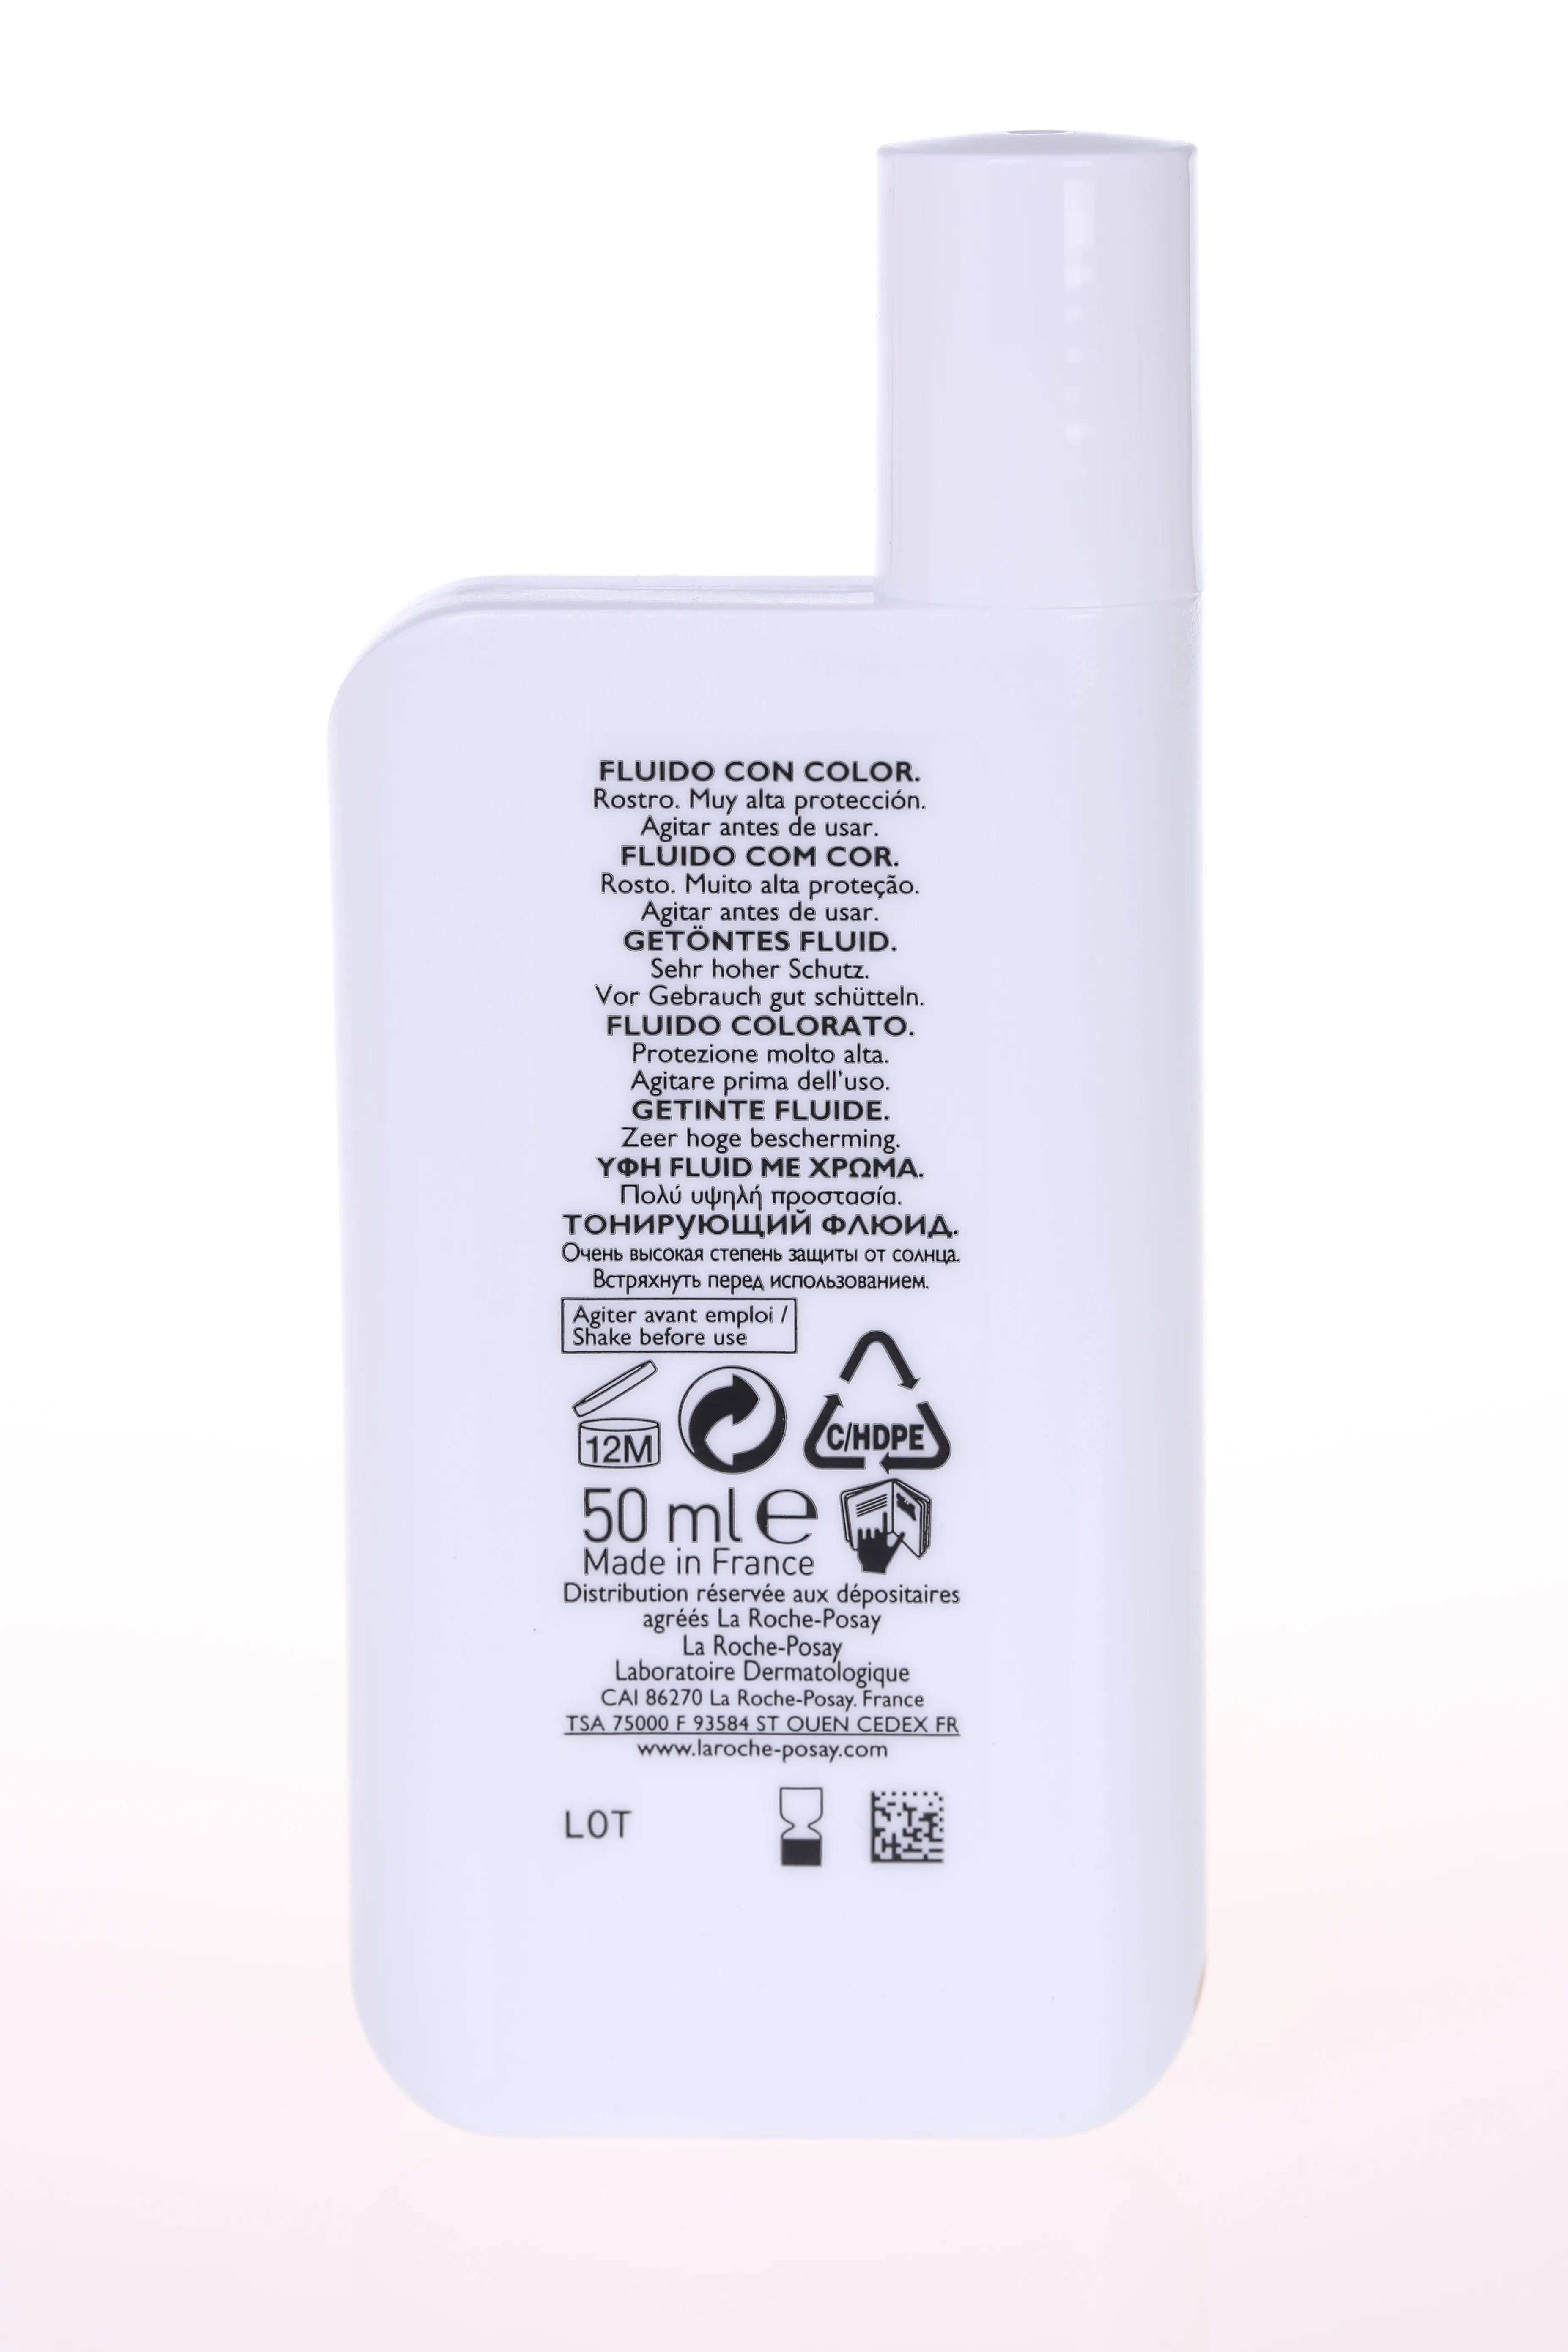 La Roche-Posay Anthelios XL, fluid barwiący do twarzy SPF 50+, 50 ml 